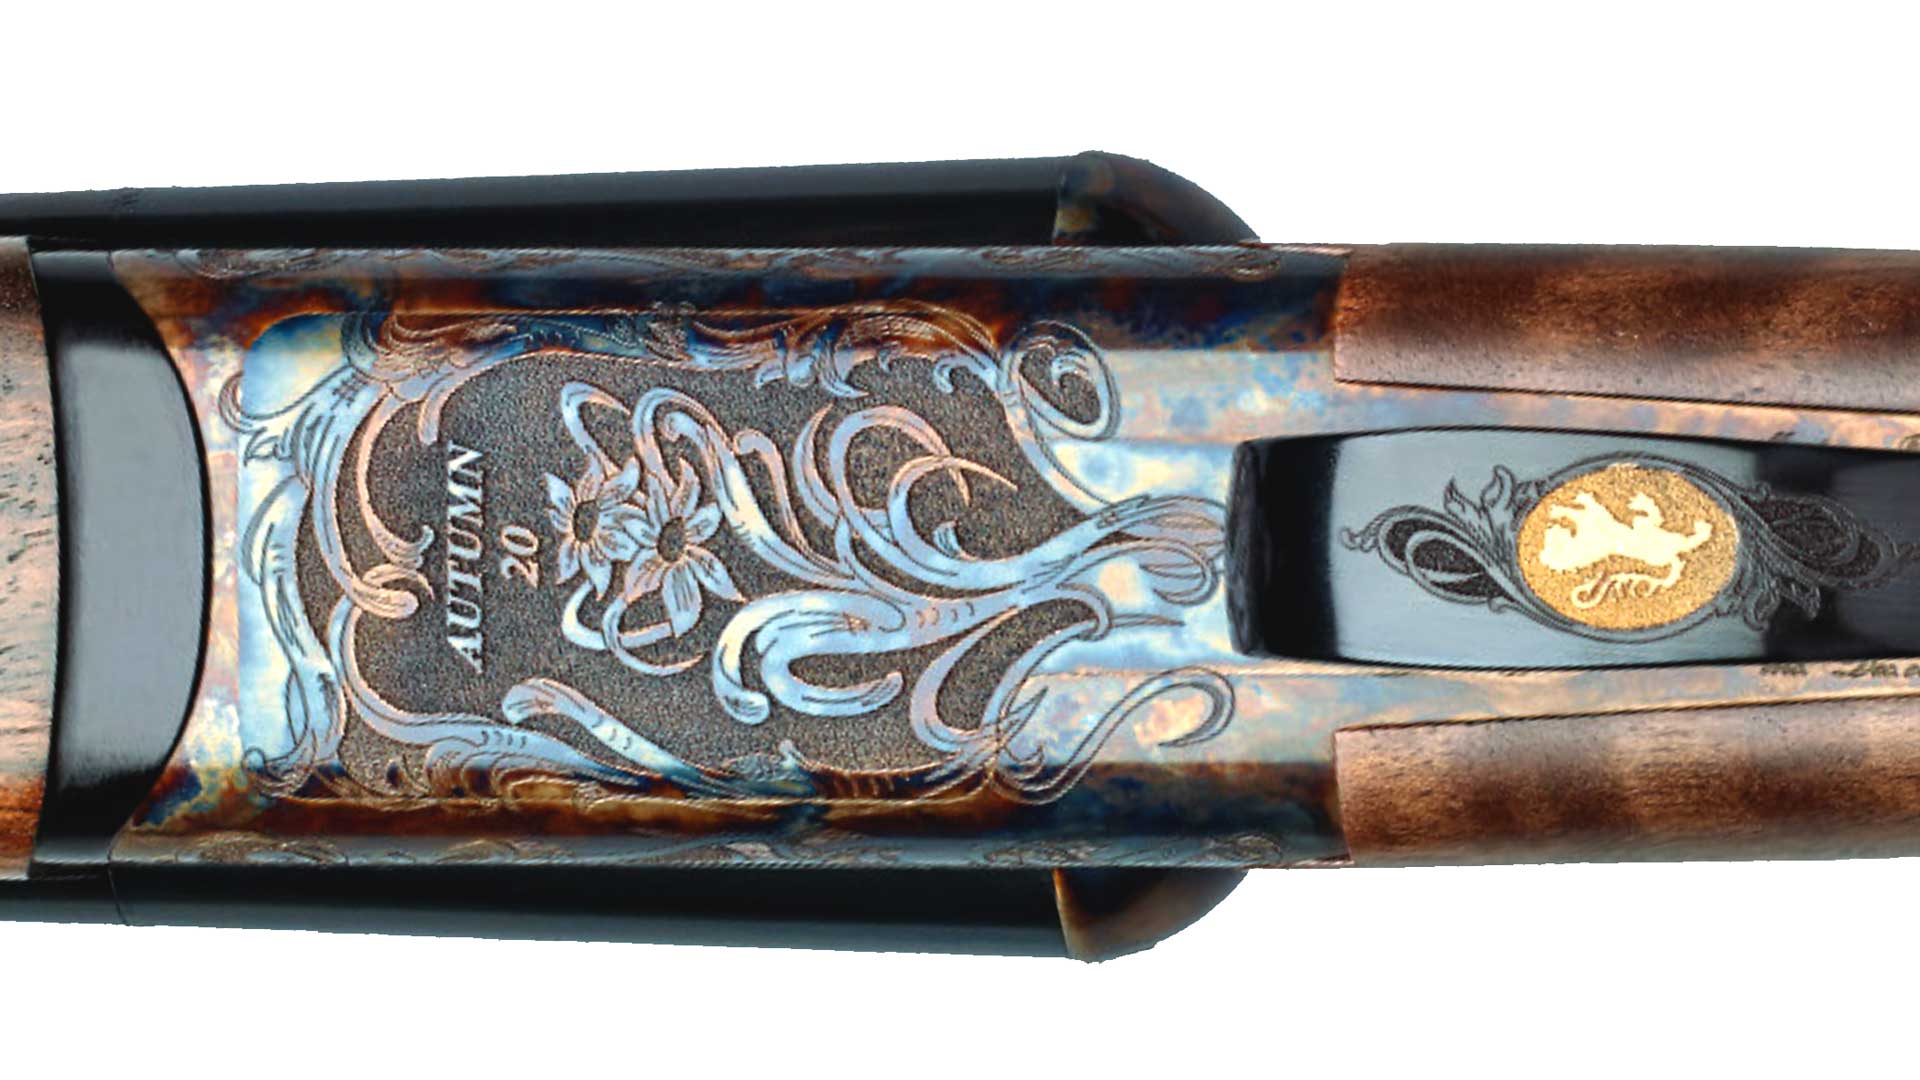 metal engraving gold emblem scrolls flowers gun receiver shotgun